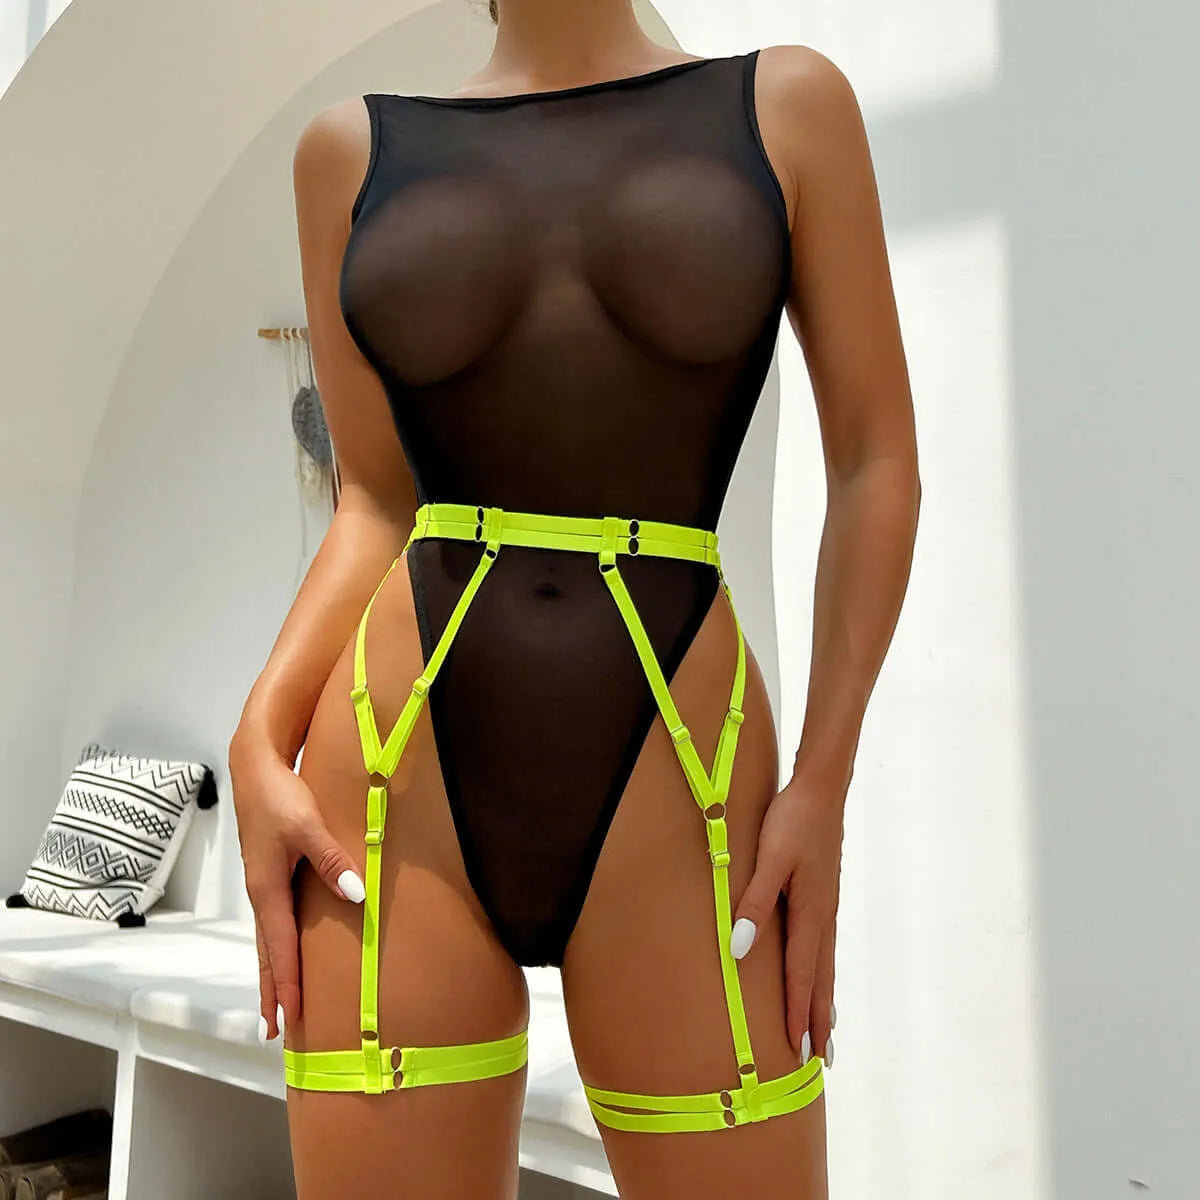 Mesh bodysuit with contrasting garter belt lingerie set - Elite_Intimates_Lingerie_Online